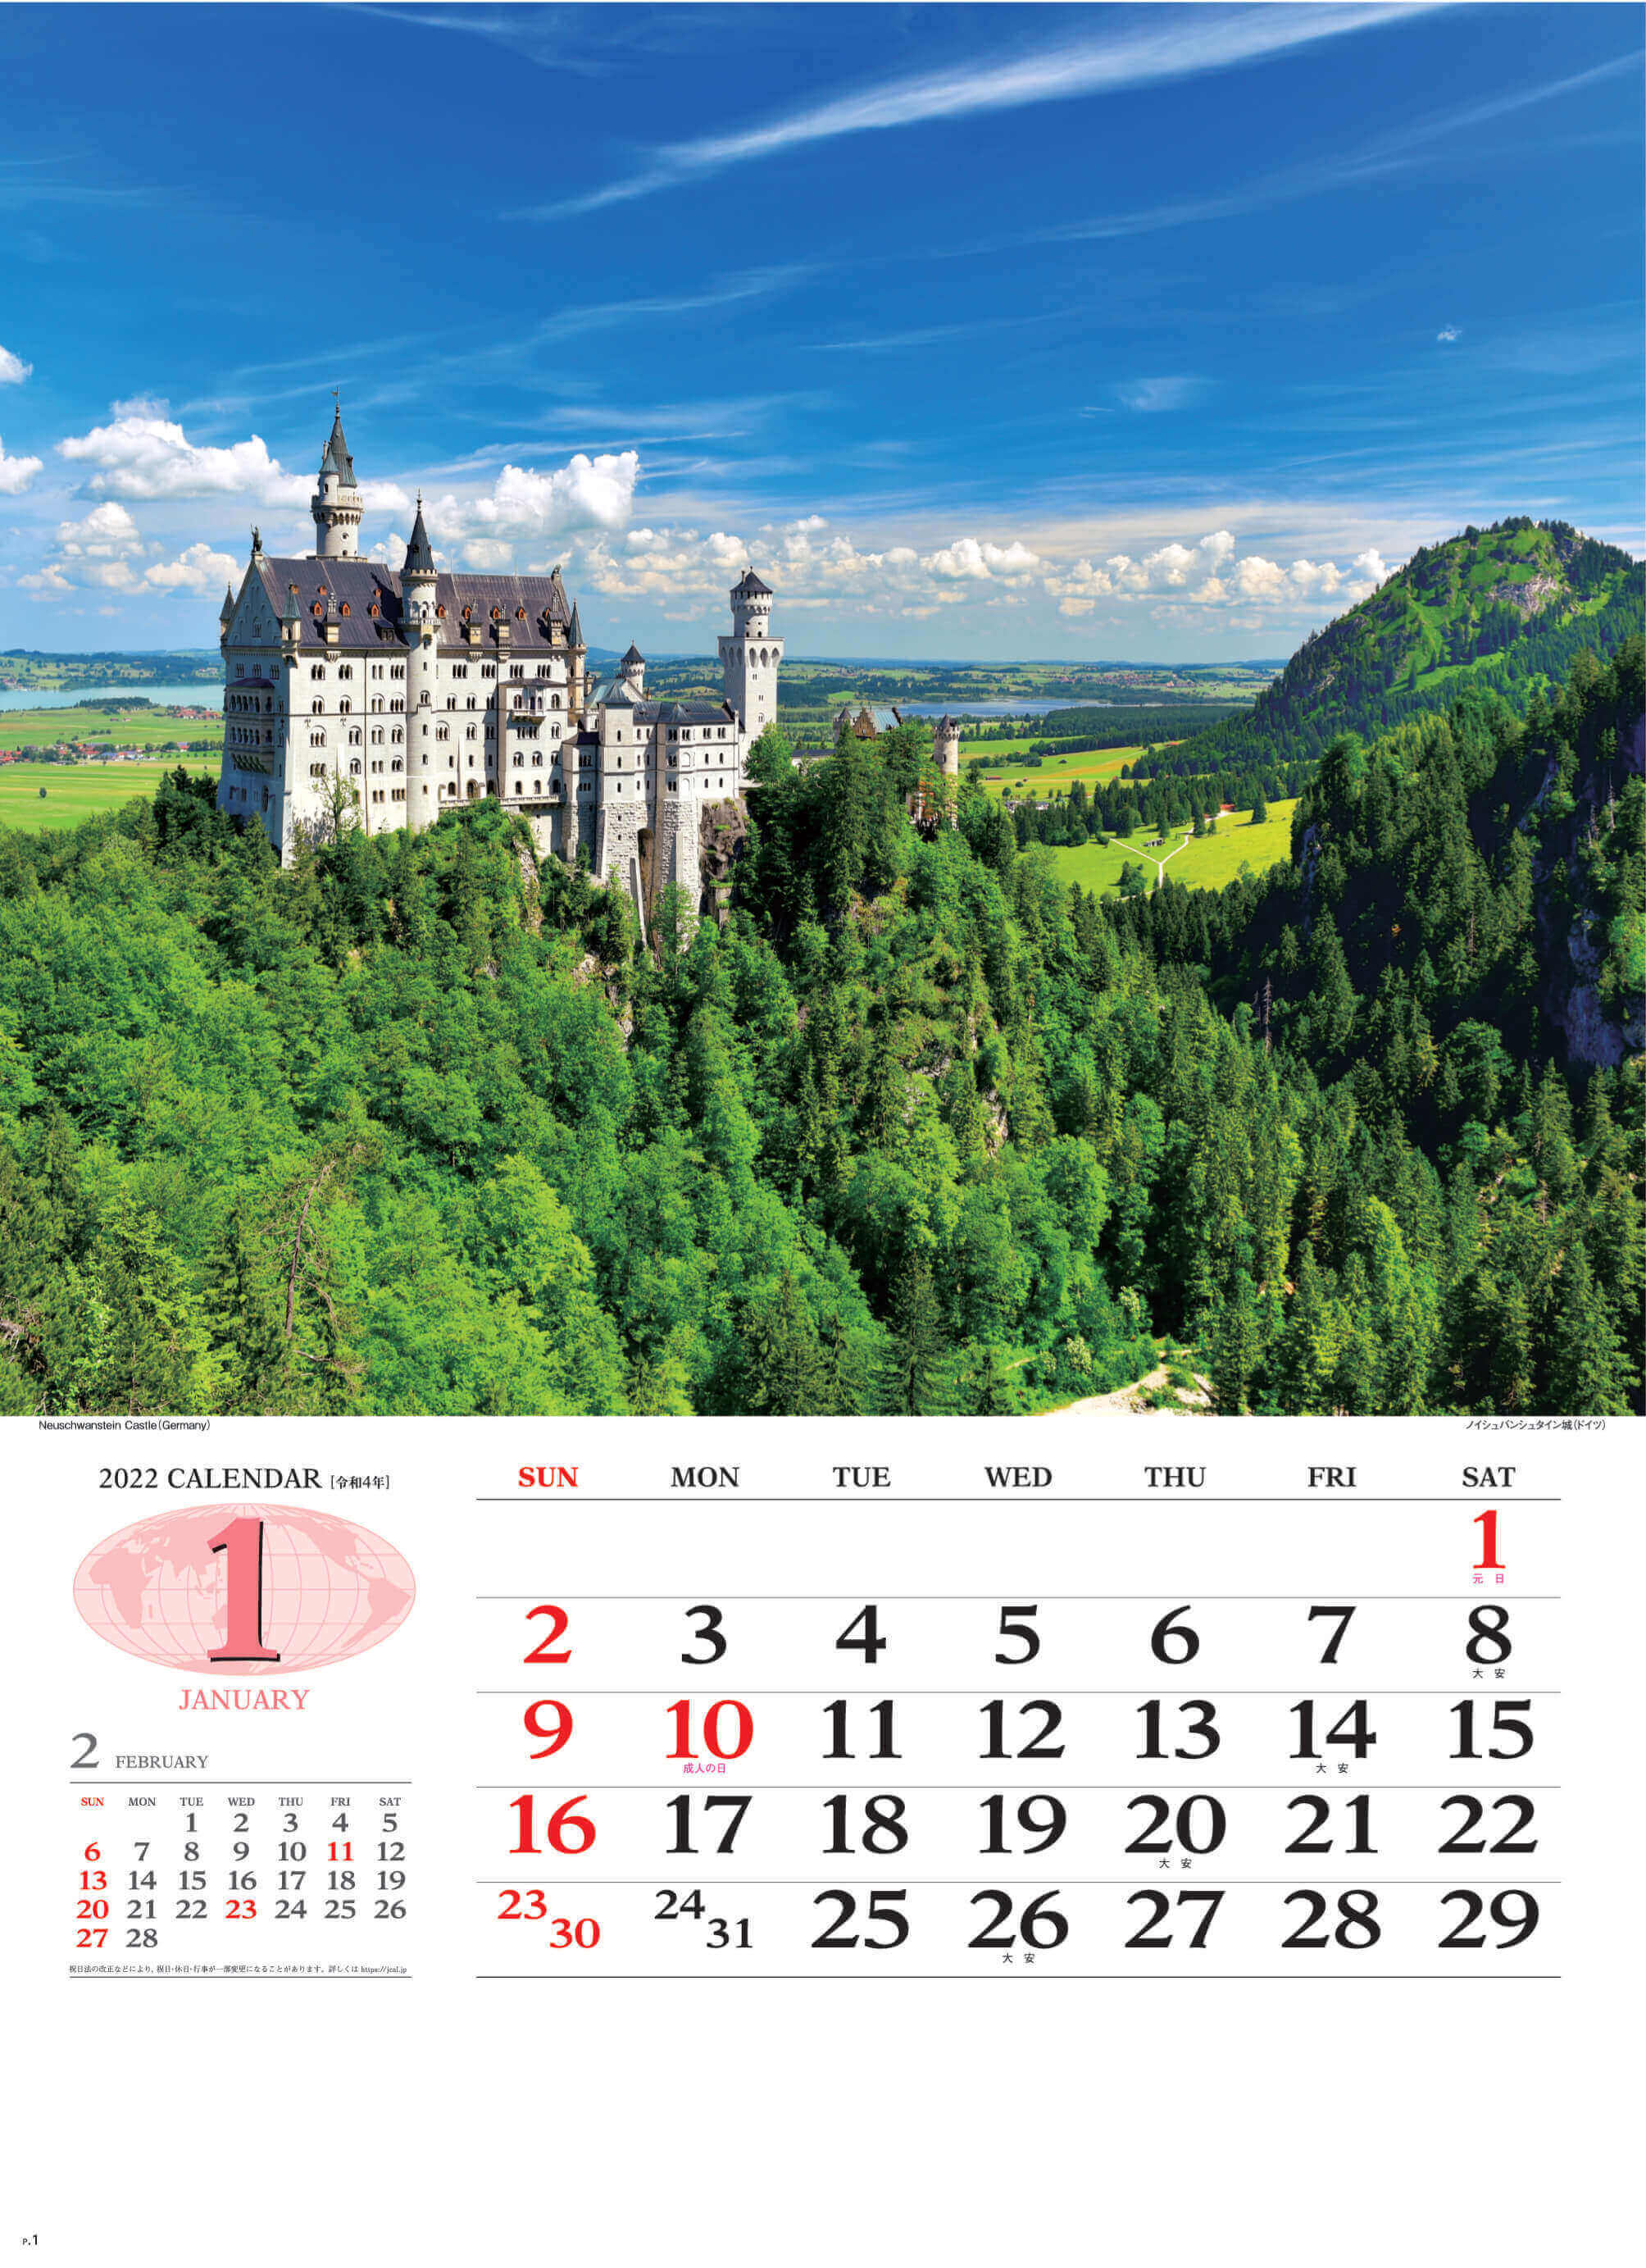 1月 ノイシュバンシュタイン城 ドイツ 世界の景観 2022年カレンダーの画像